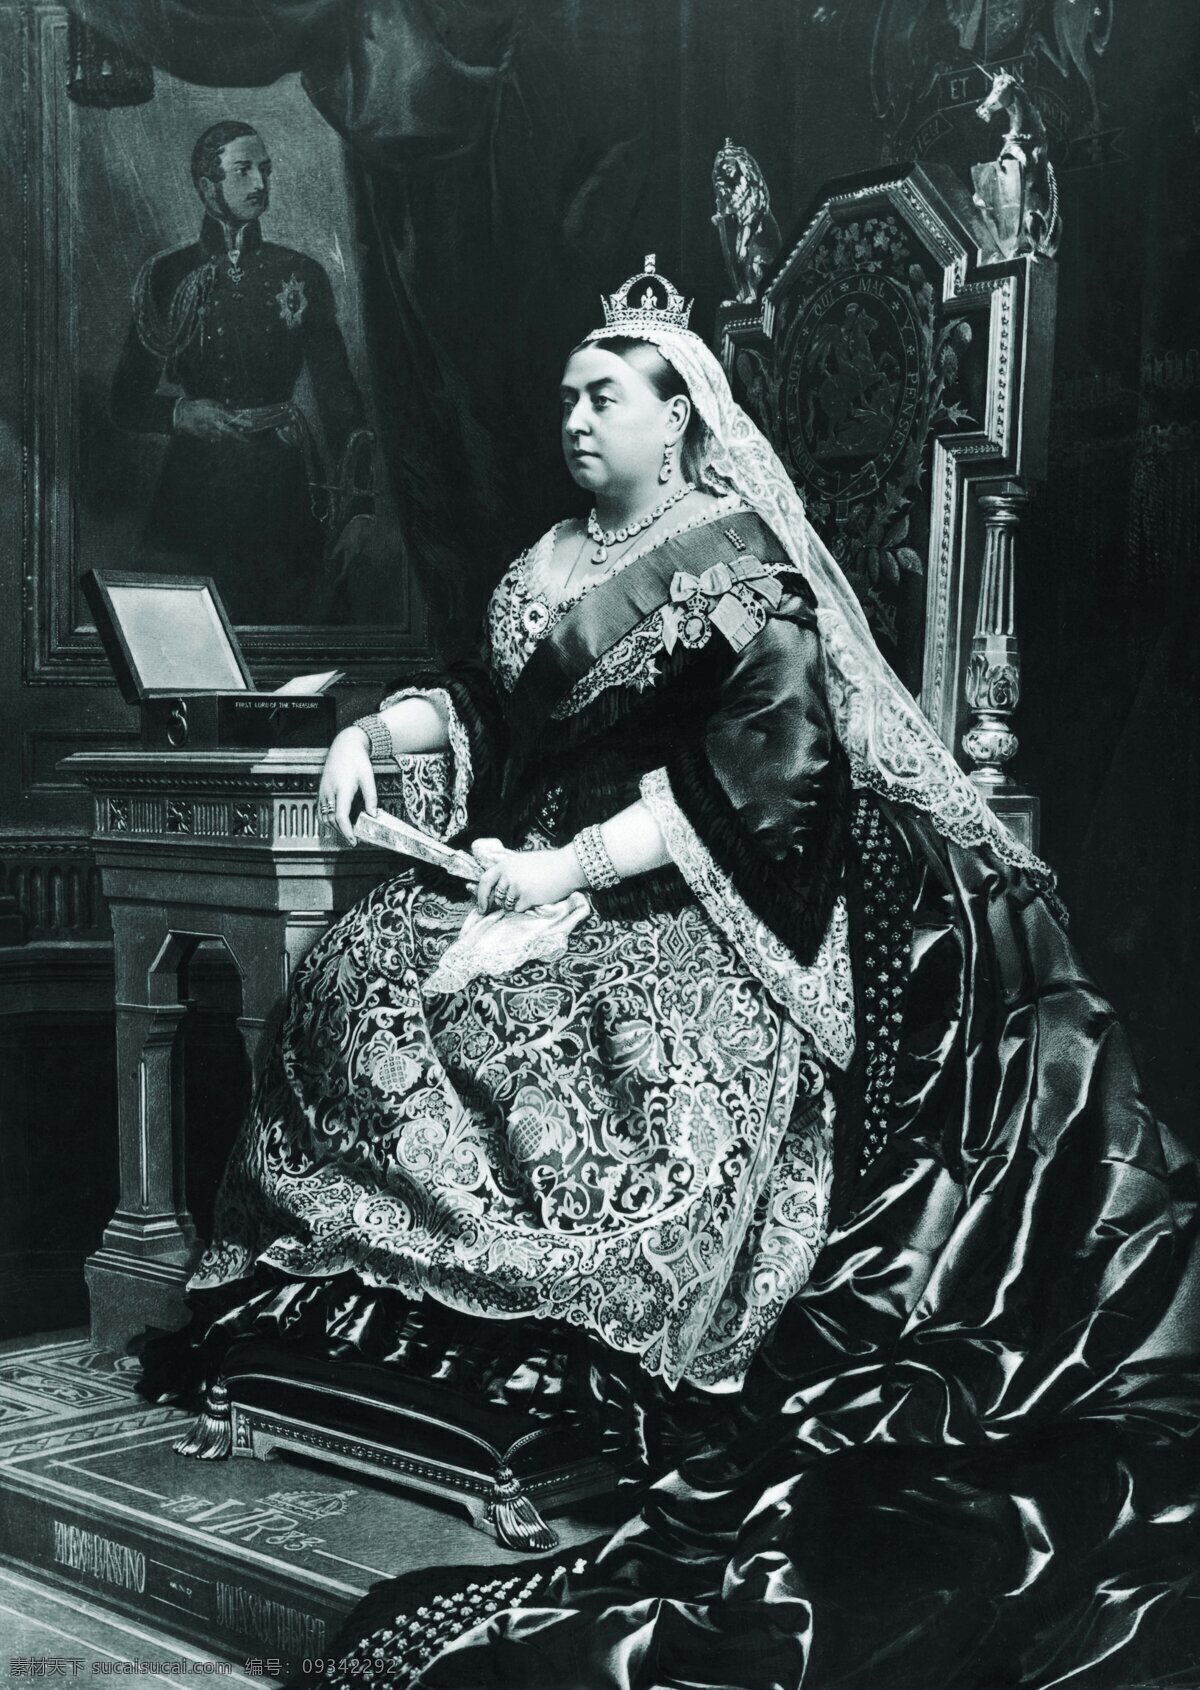 维多利亚女王 维多利亚 女王 皇室 贵族 痴情 女人 独立 经典 艺术 黑白 壁画 椅子 家居 头巾 裙子 上流 女性女人 人物图库